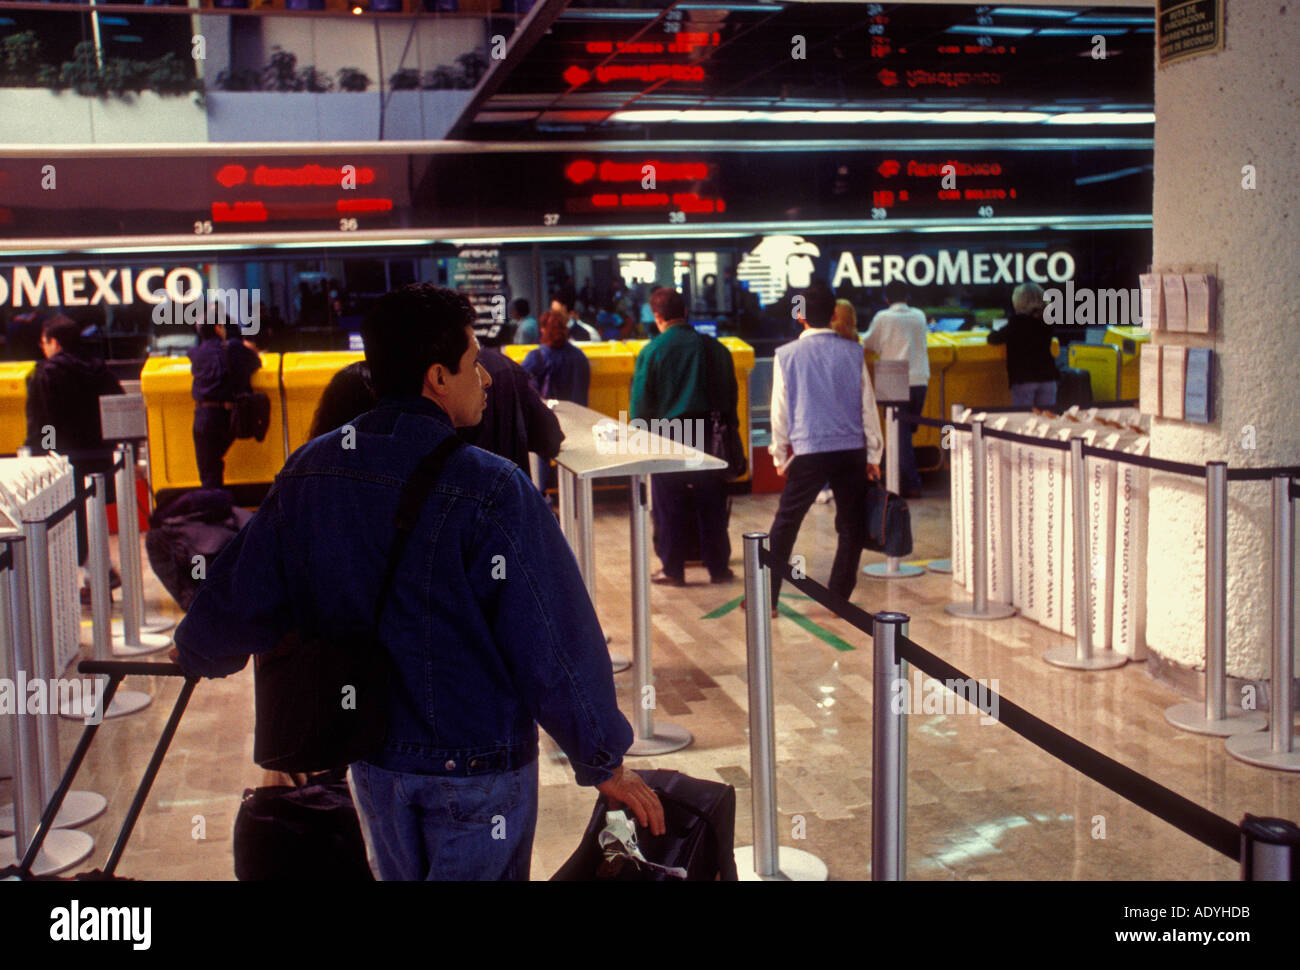 AeroMexico, Mexikaner, Mexikanisch, Passagiere, Reisen, Abflugebene, internationalen Flughafen Benito Juarez, Mexiko City, Mexiko Stockfoto